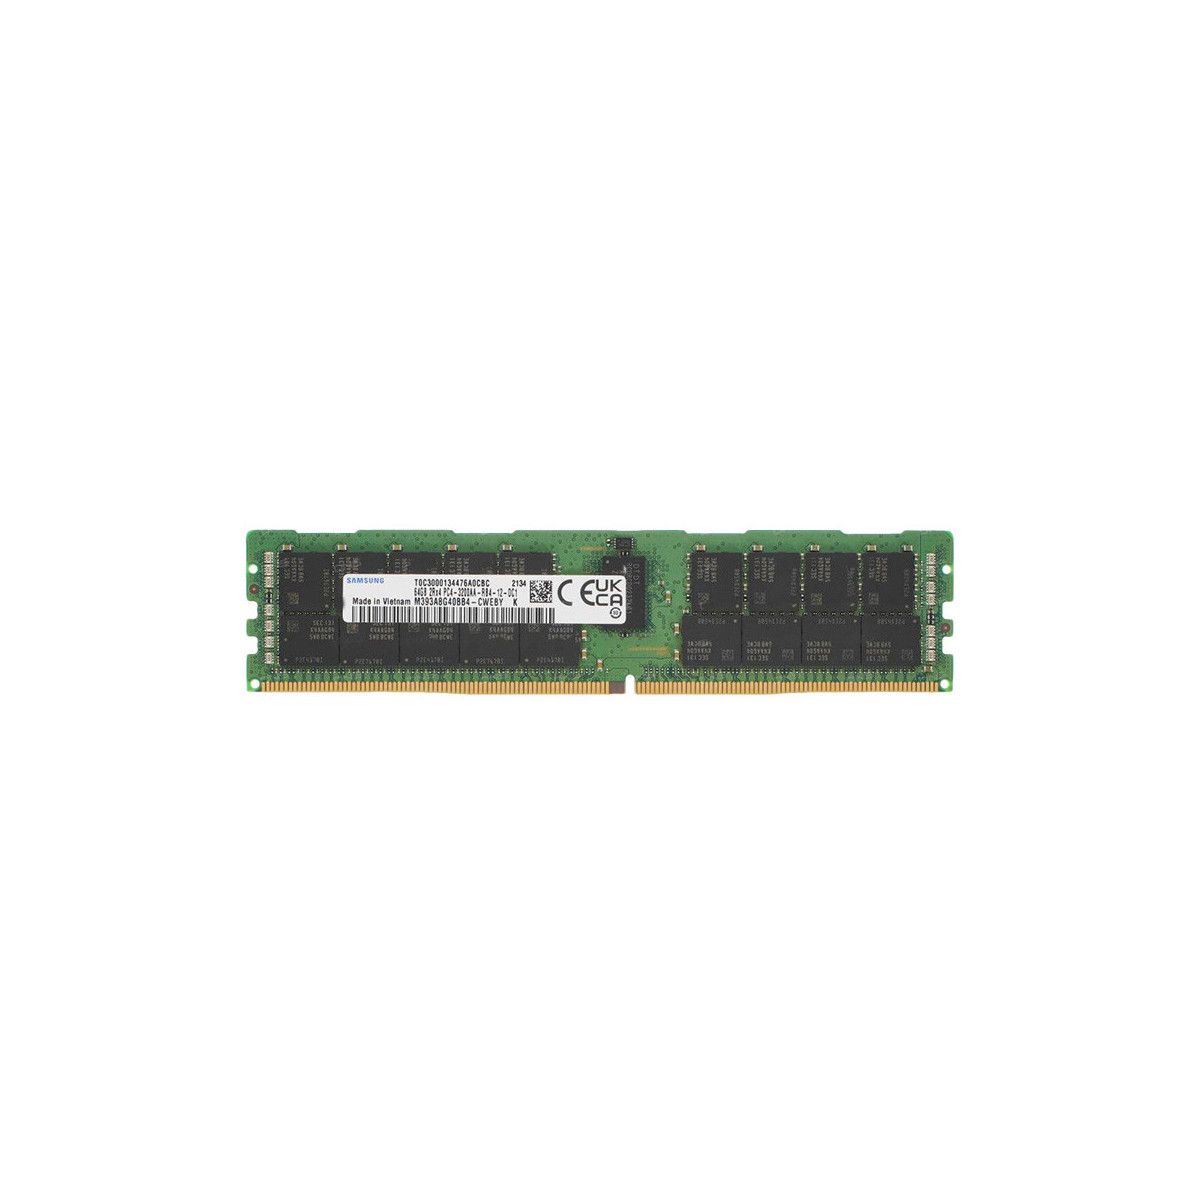 AA810828-MS - Memstar 1x 64GB DDR4-3200 RDIMM PC4-25600R - Memorie OEM compatibilă Mem-Star 1 - Memstar 